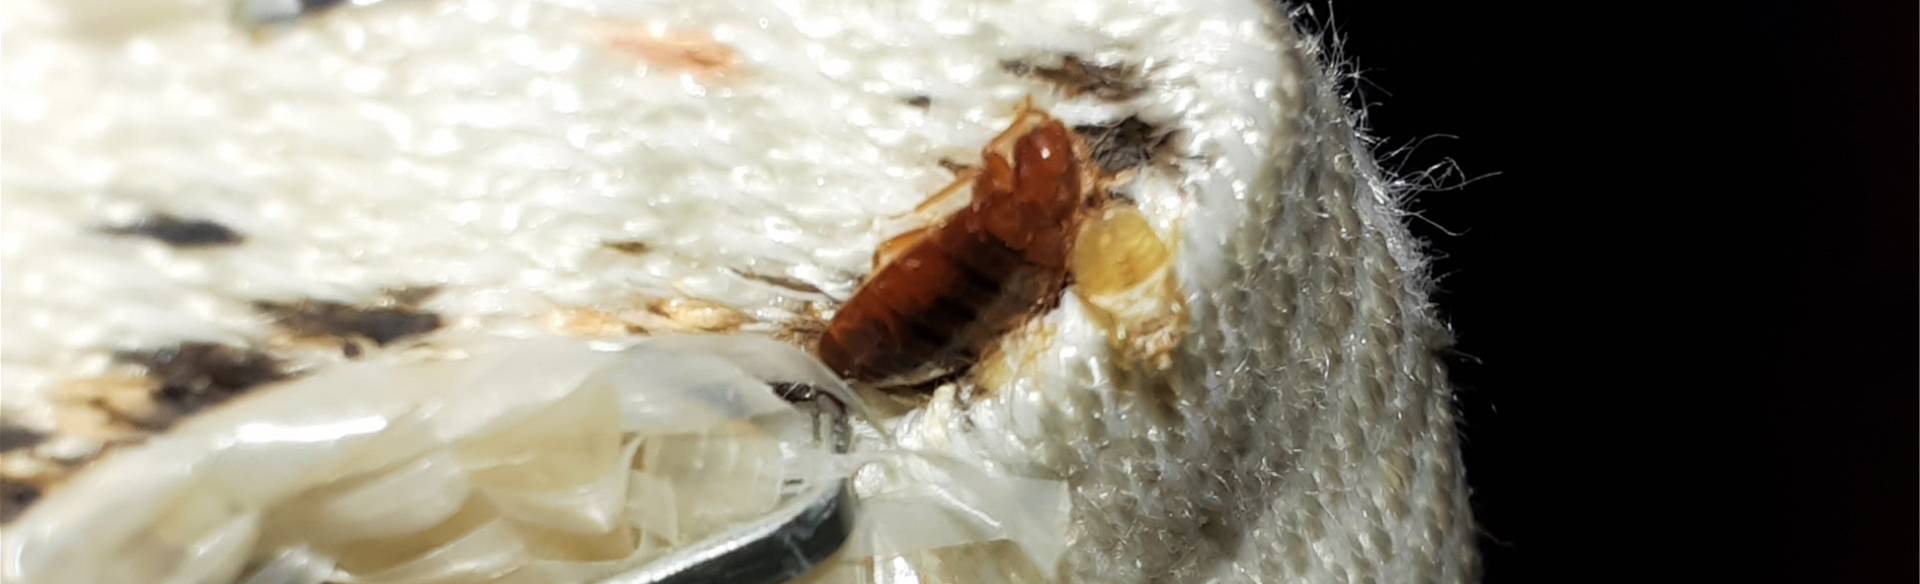 bedbugs on a mattress